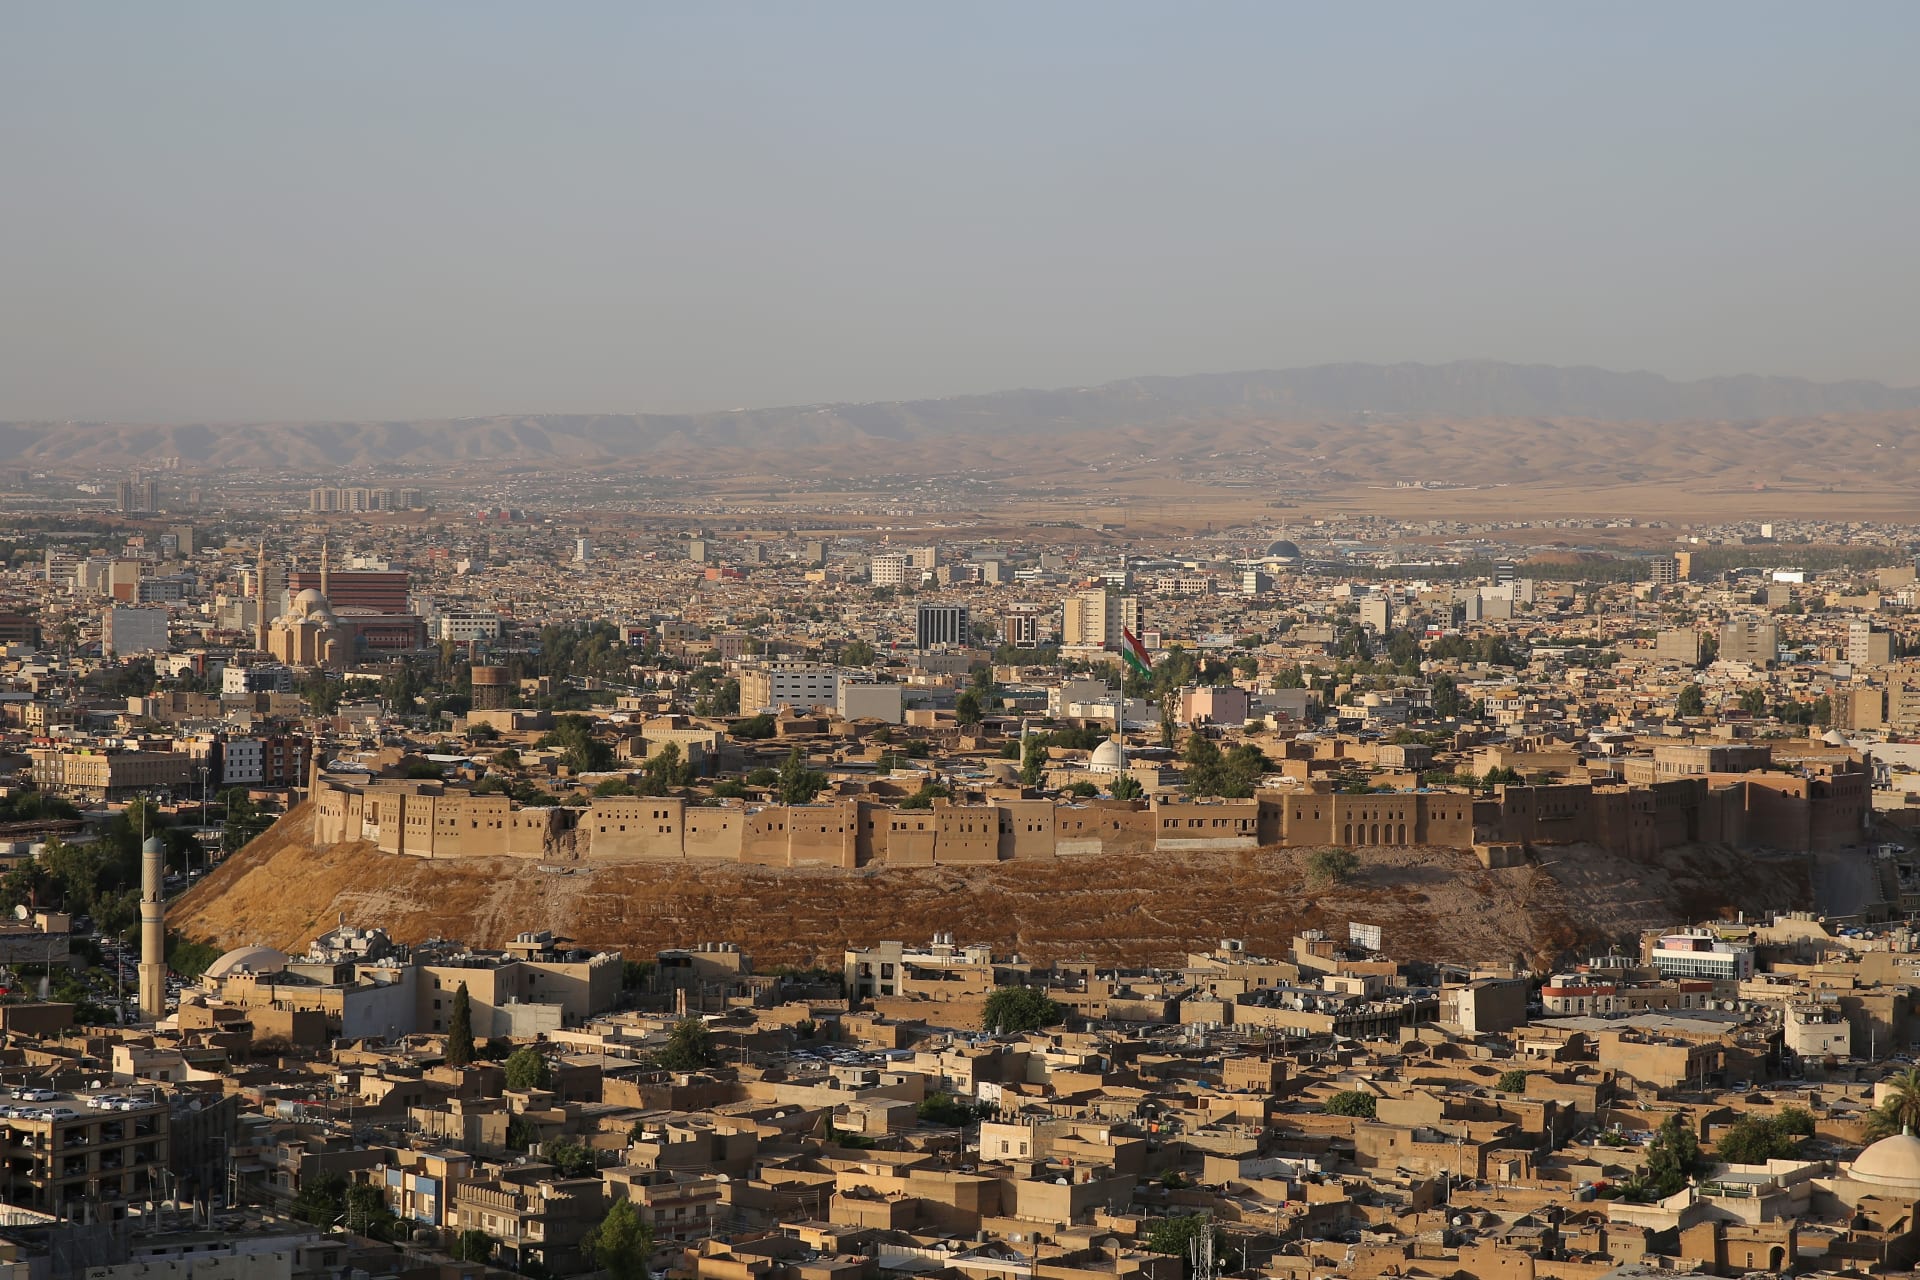  منظر عام لمدينة أربيل (صورة أرشيفية)